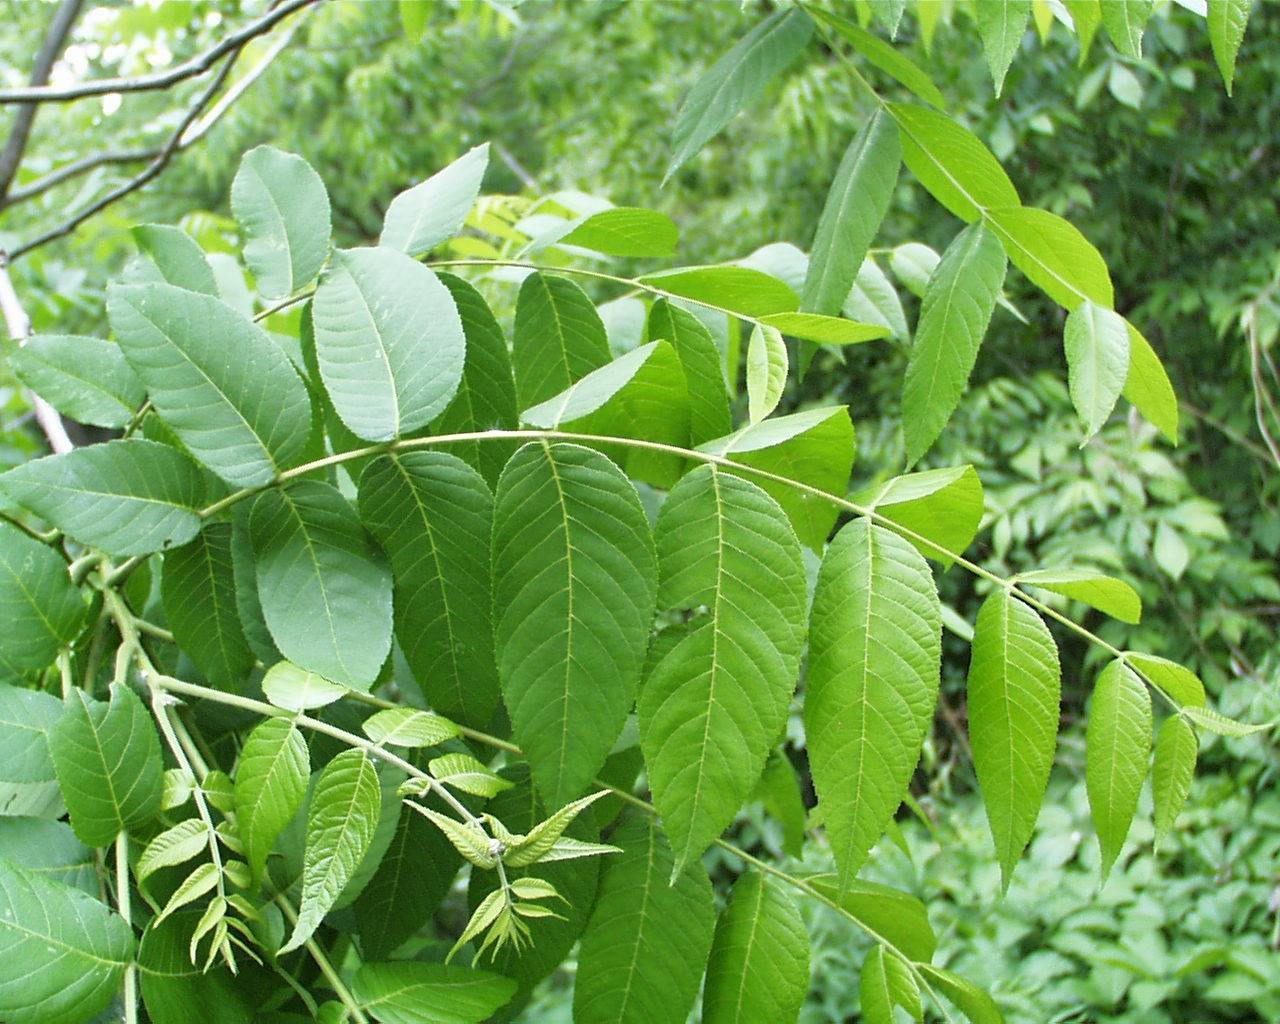 Листья как удобрение для огорода: как использовать листки грецкого ореха, чтобы получить пользу для дерева